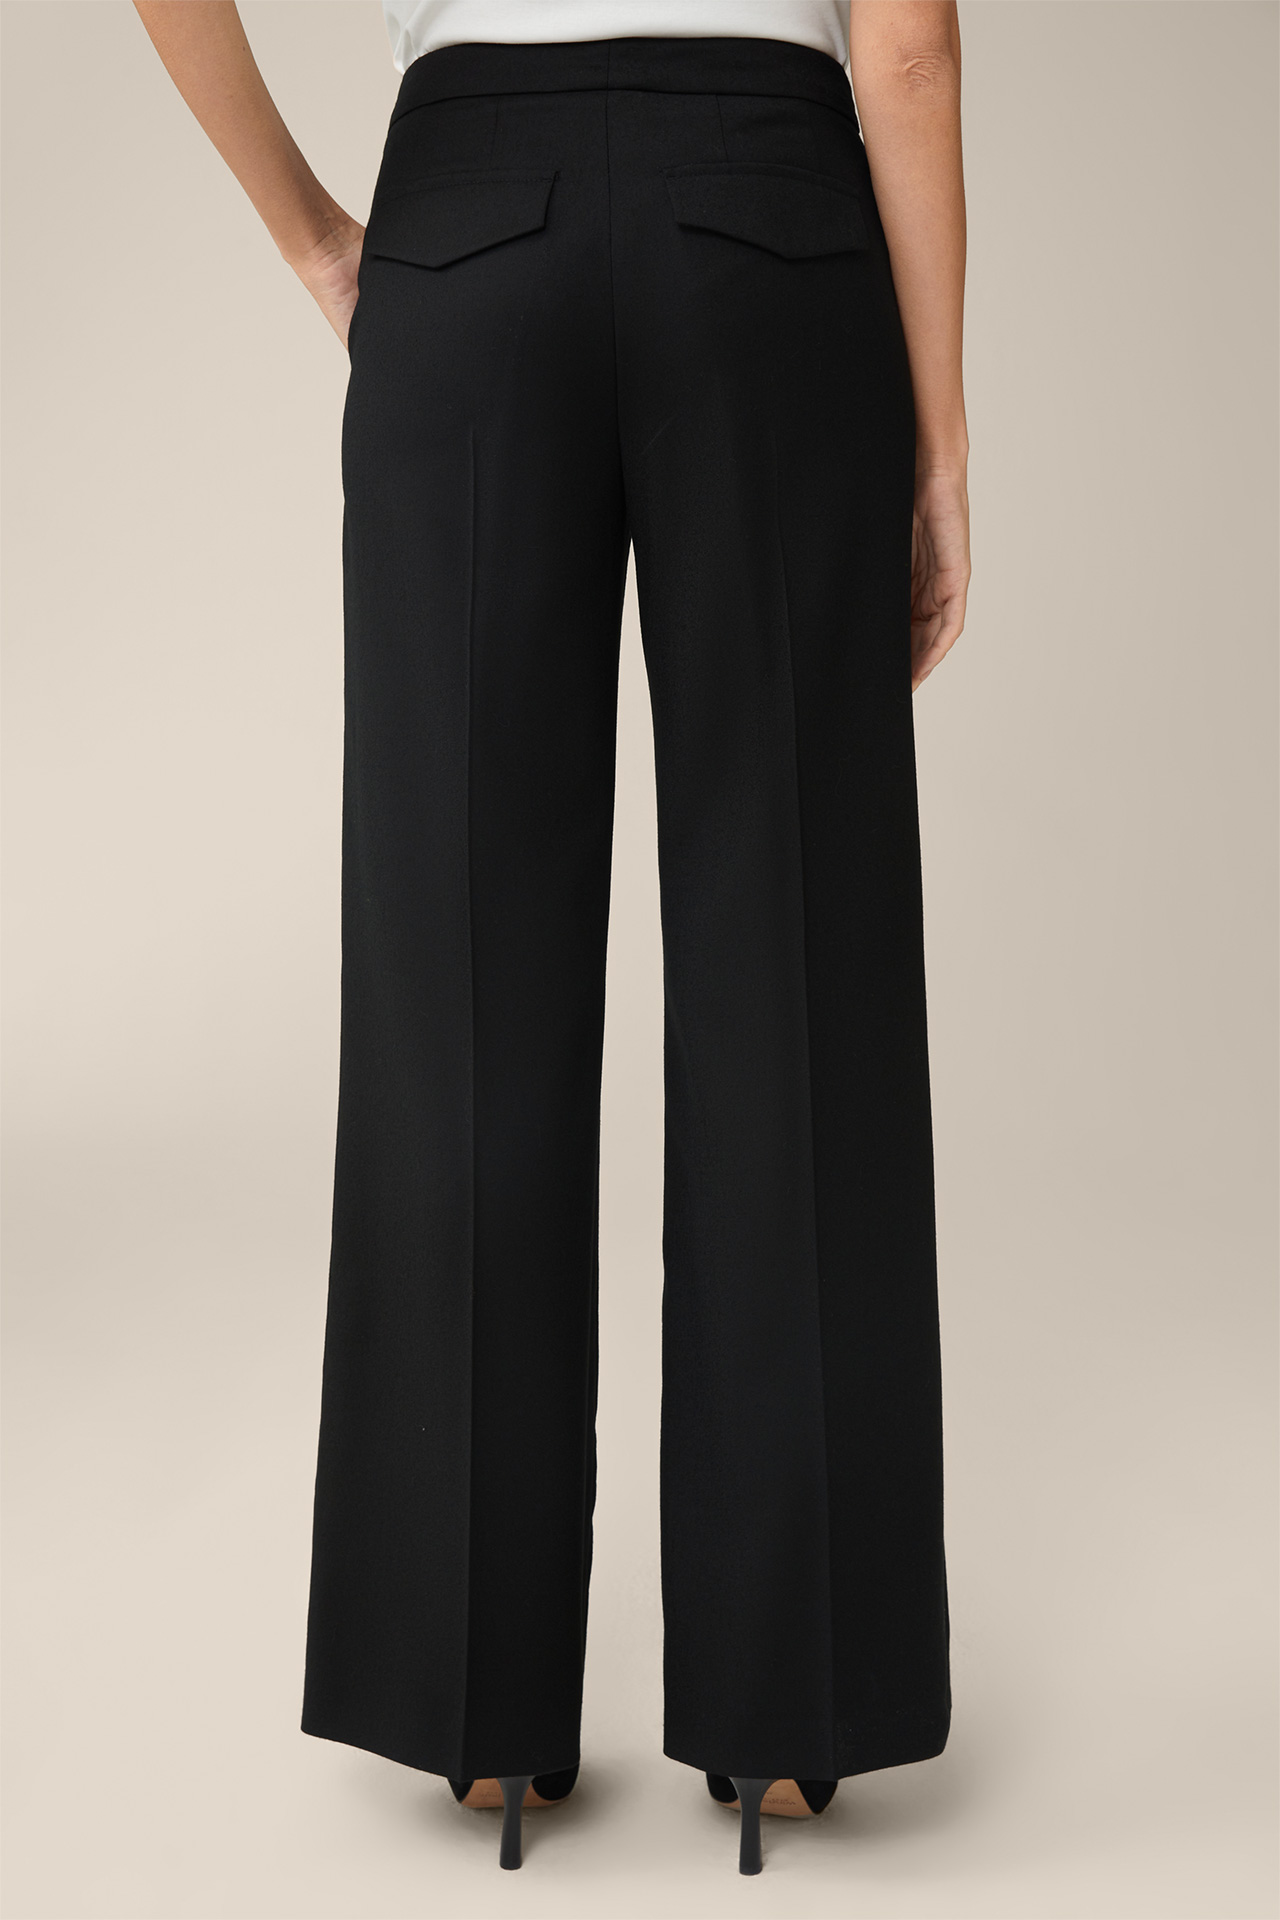 Marlene Flannel Trousers in Black